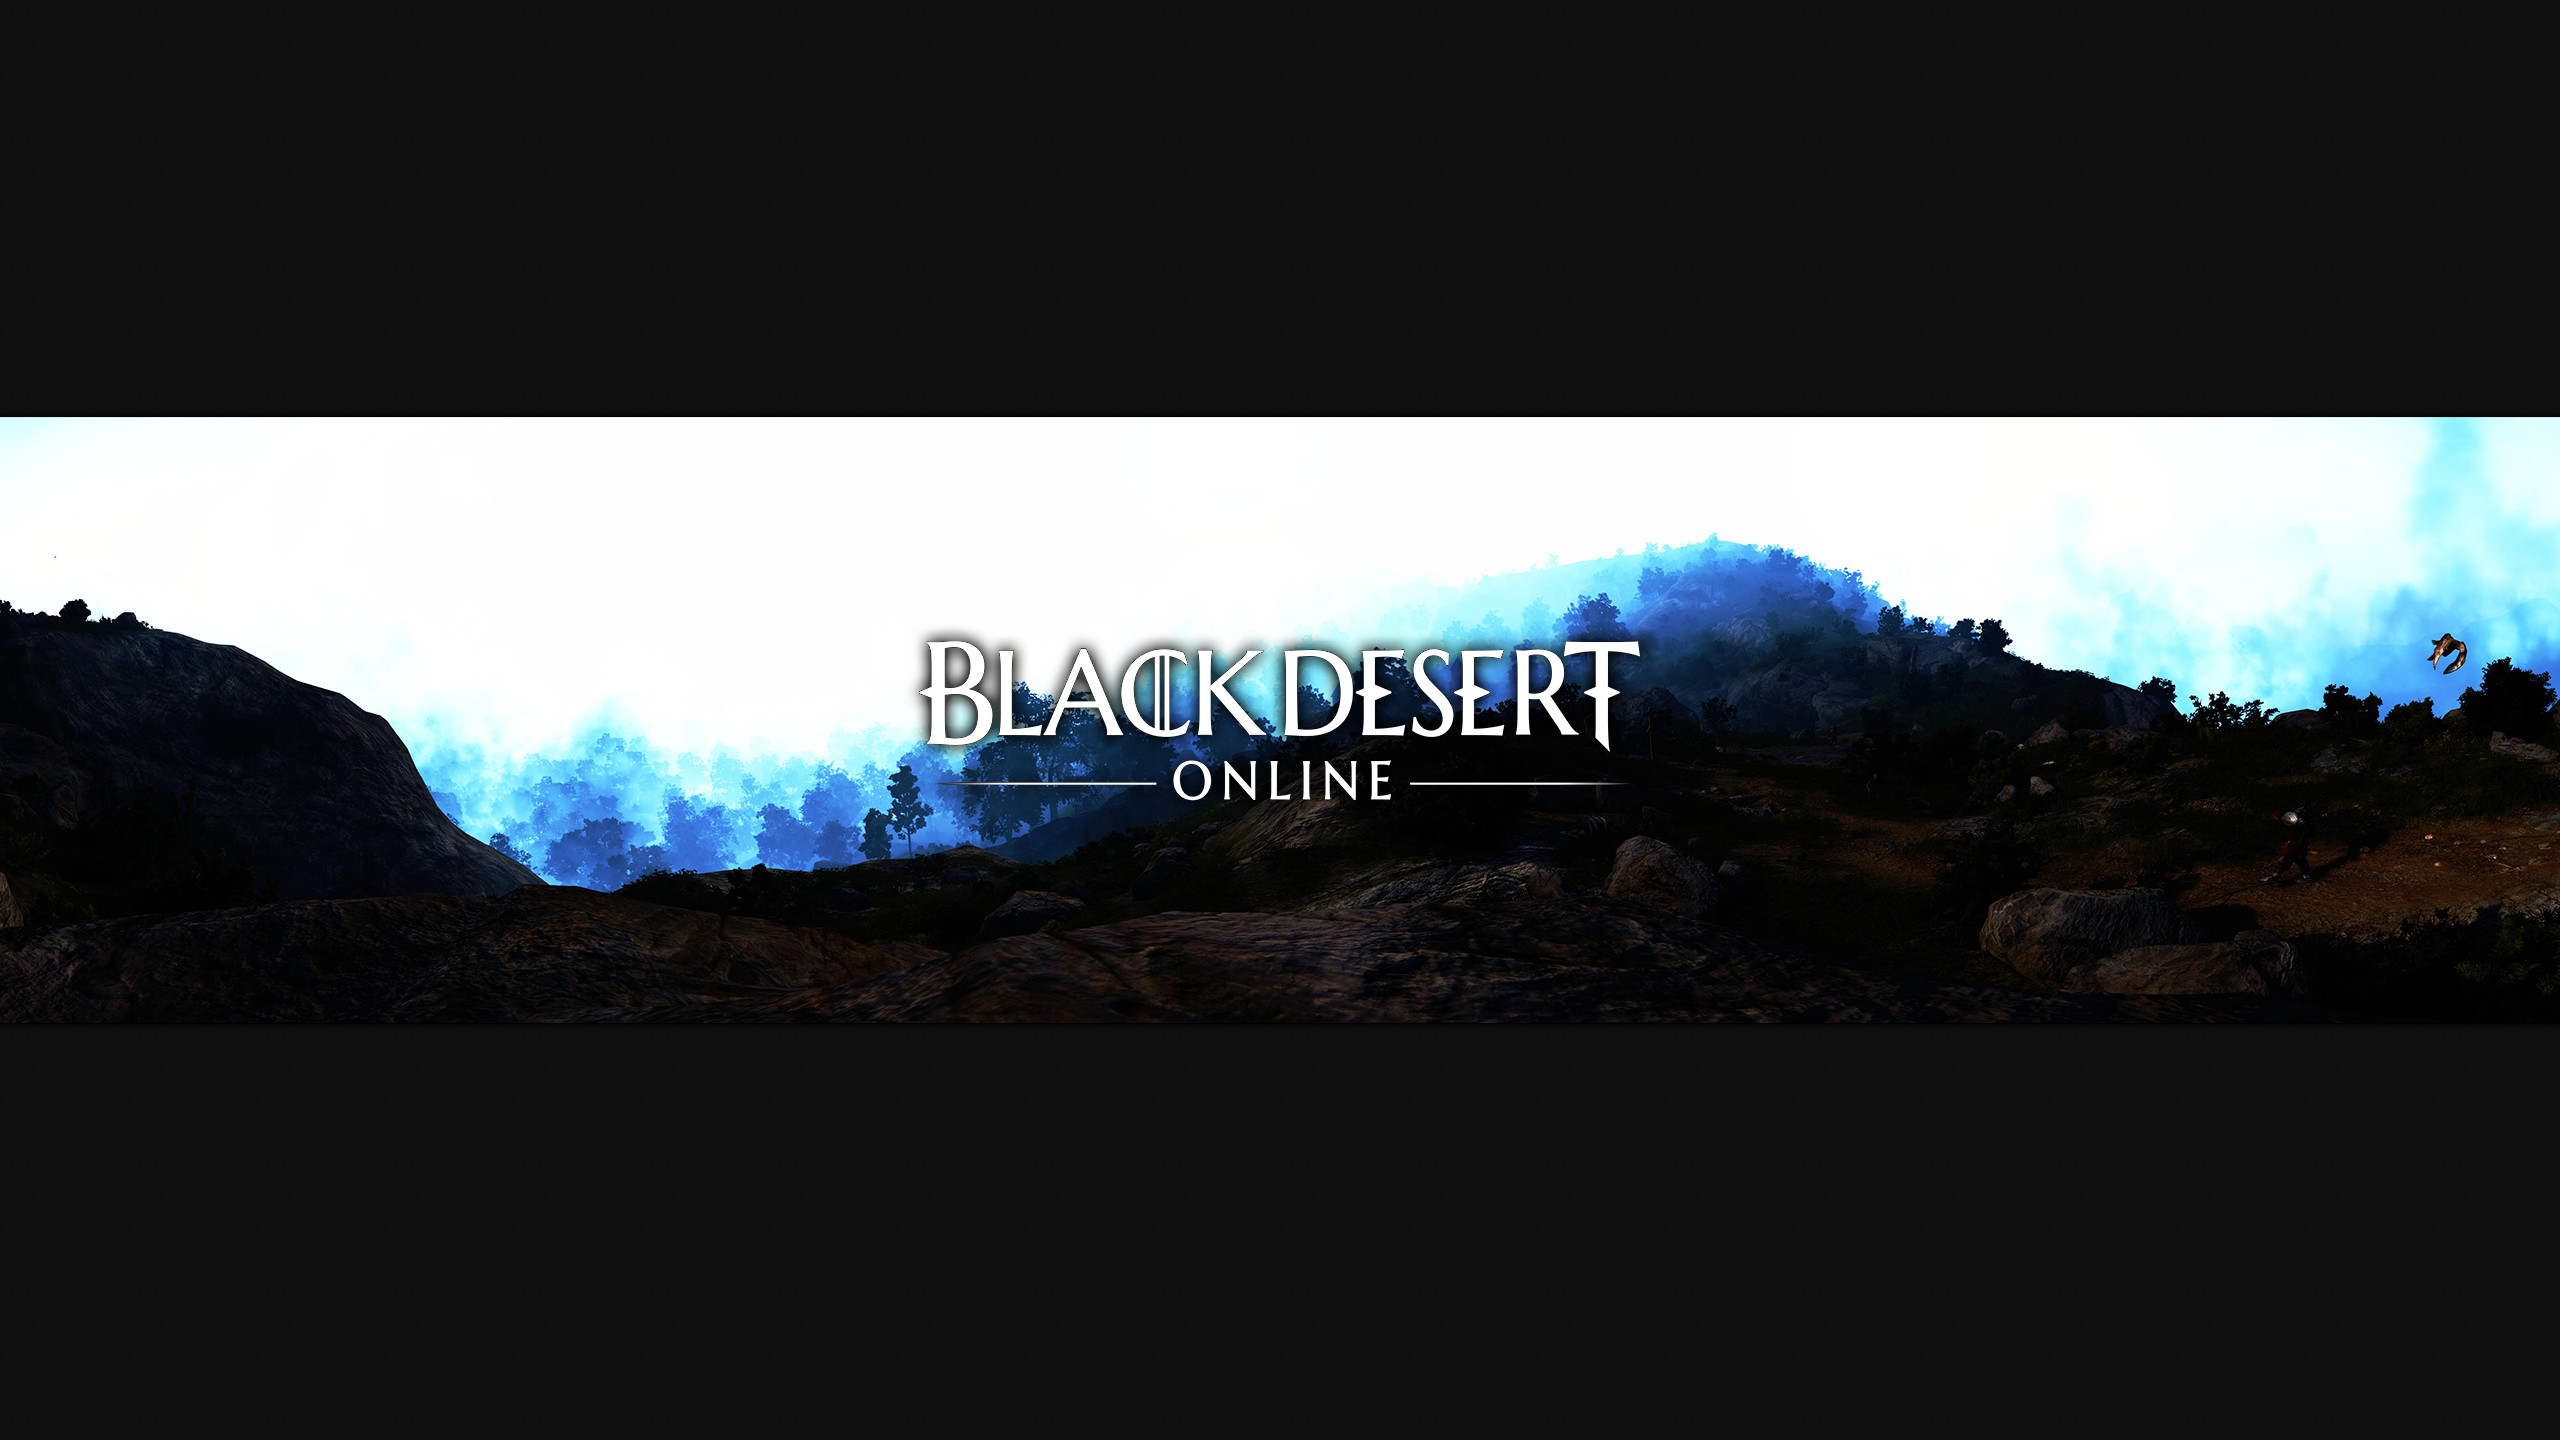 Black Desert Online Wallpapers